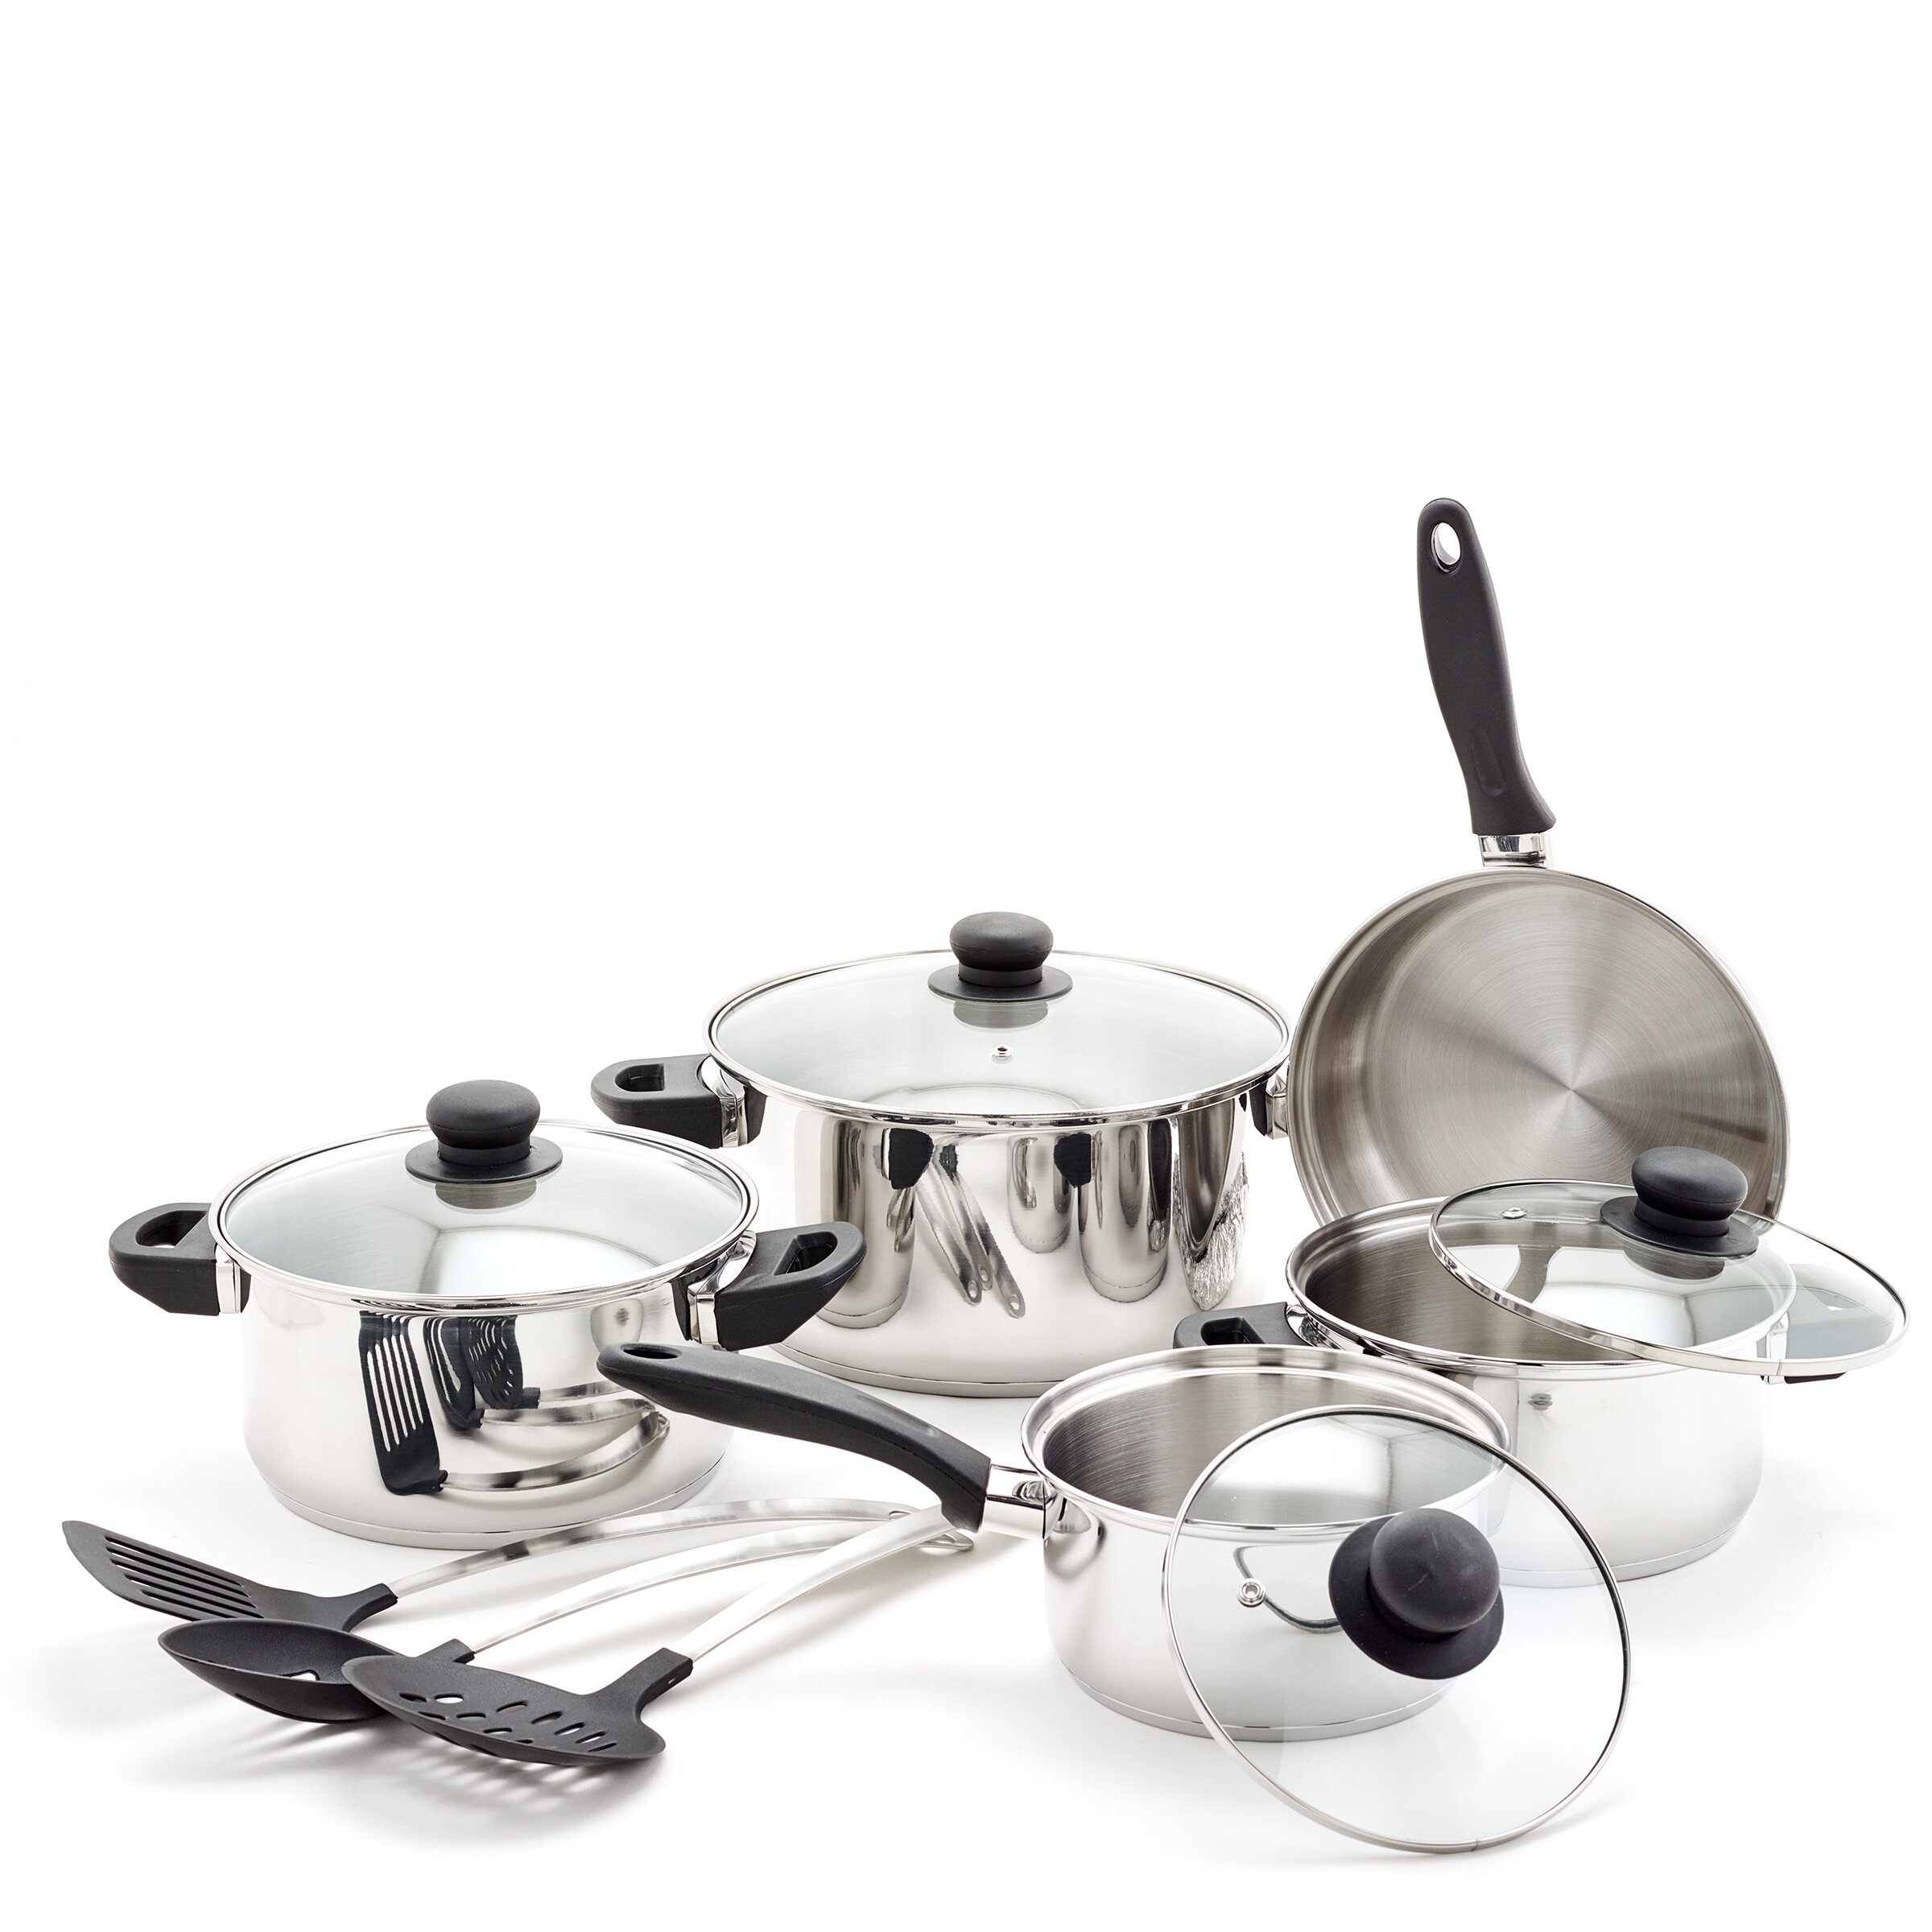 steel cookware set